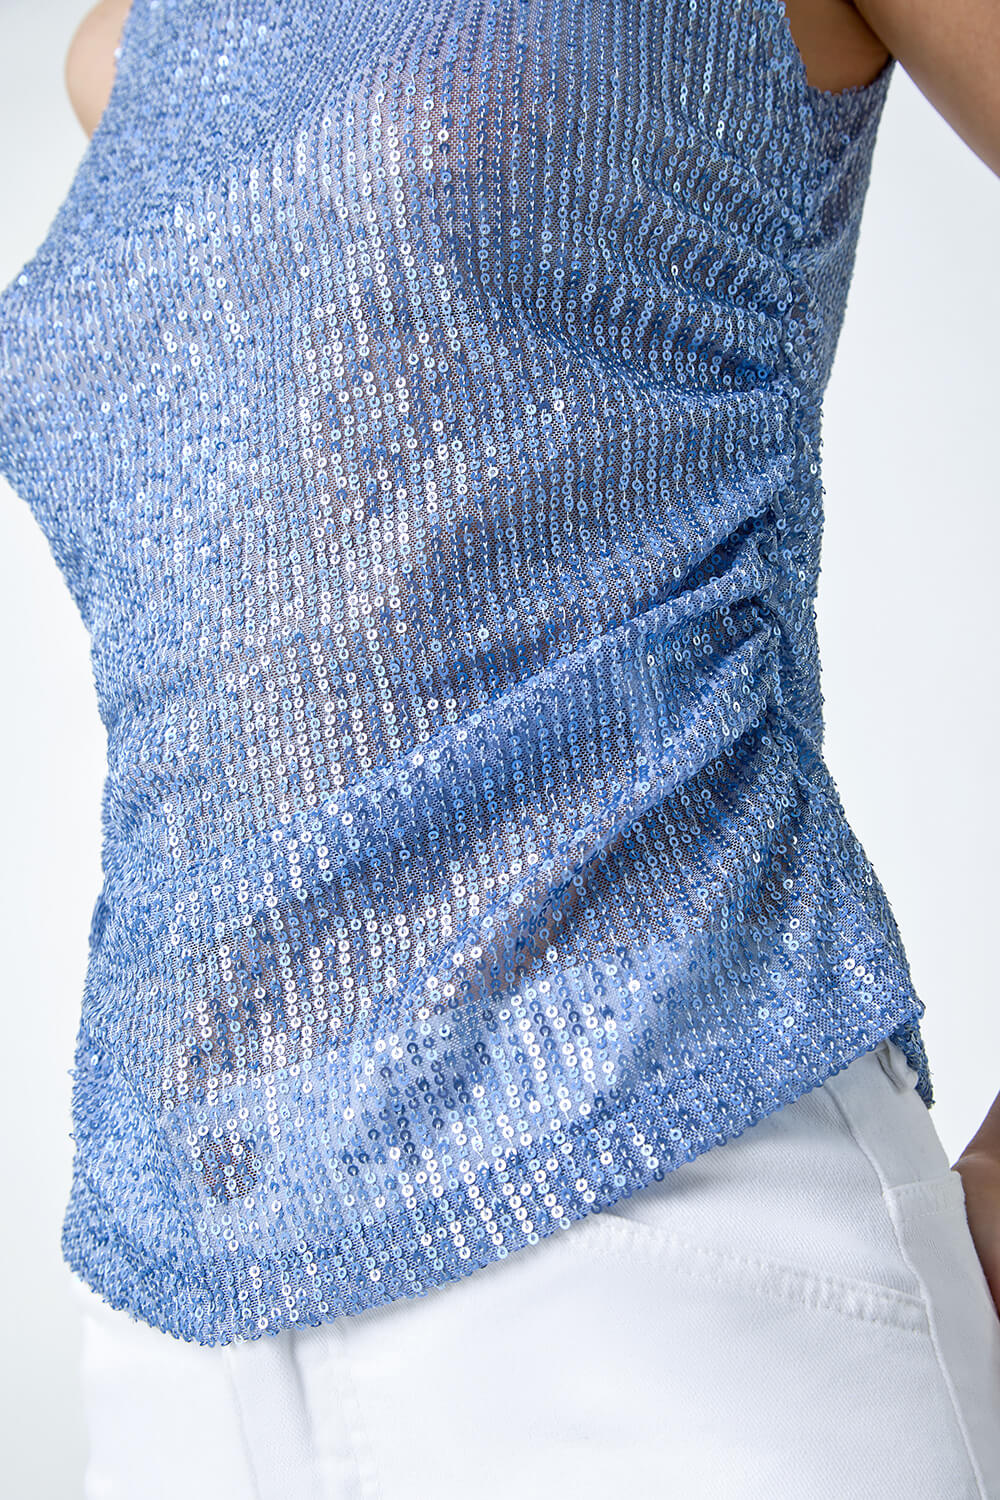 Steel Blue Sequin Embellished Stretch Vest Top, Image 5 of 5